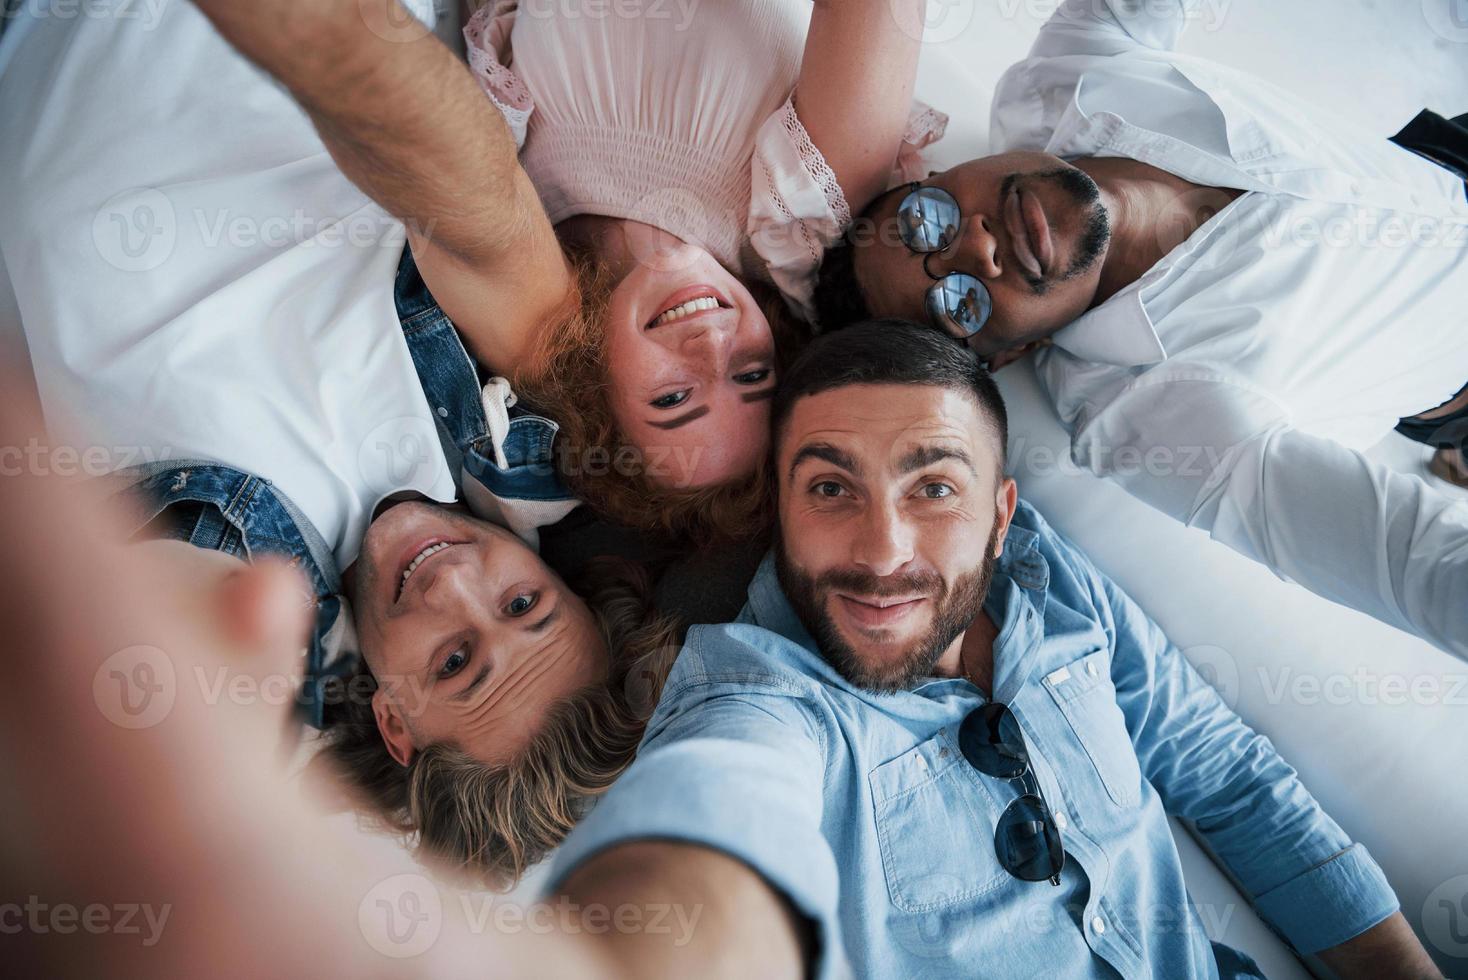 jovens se deitando e tirando uma selfie foto